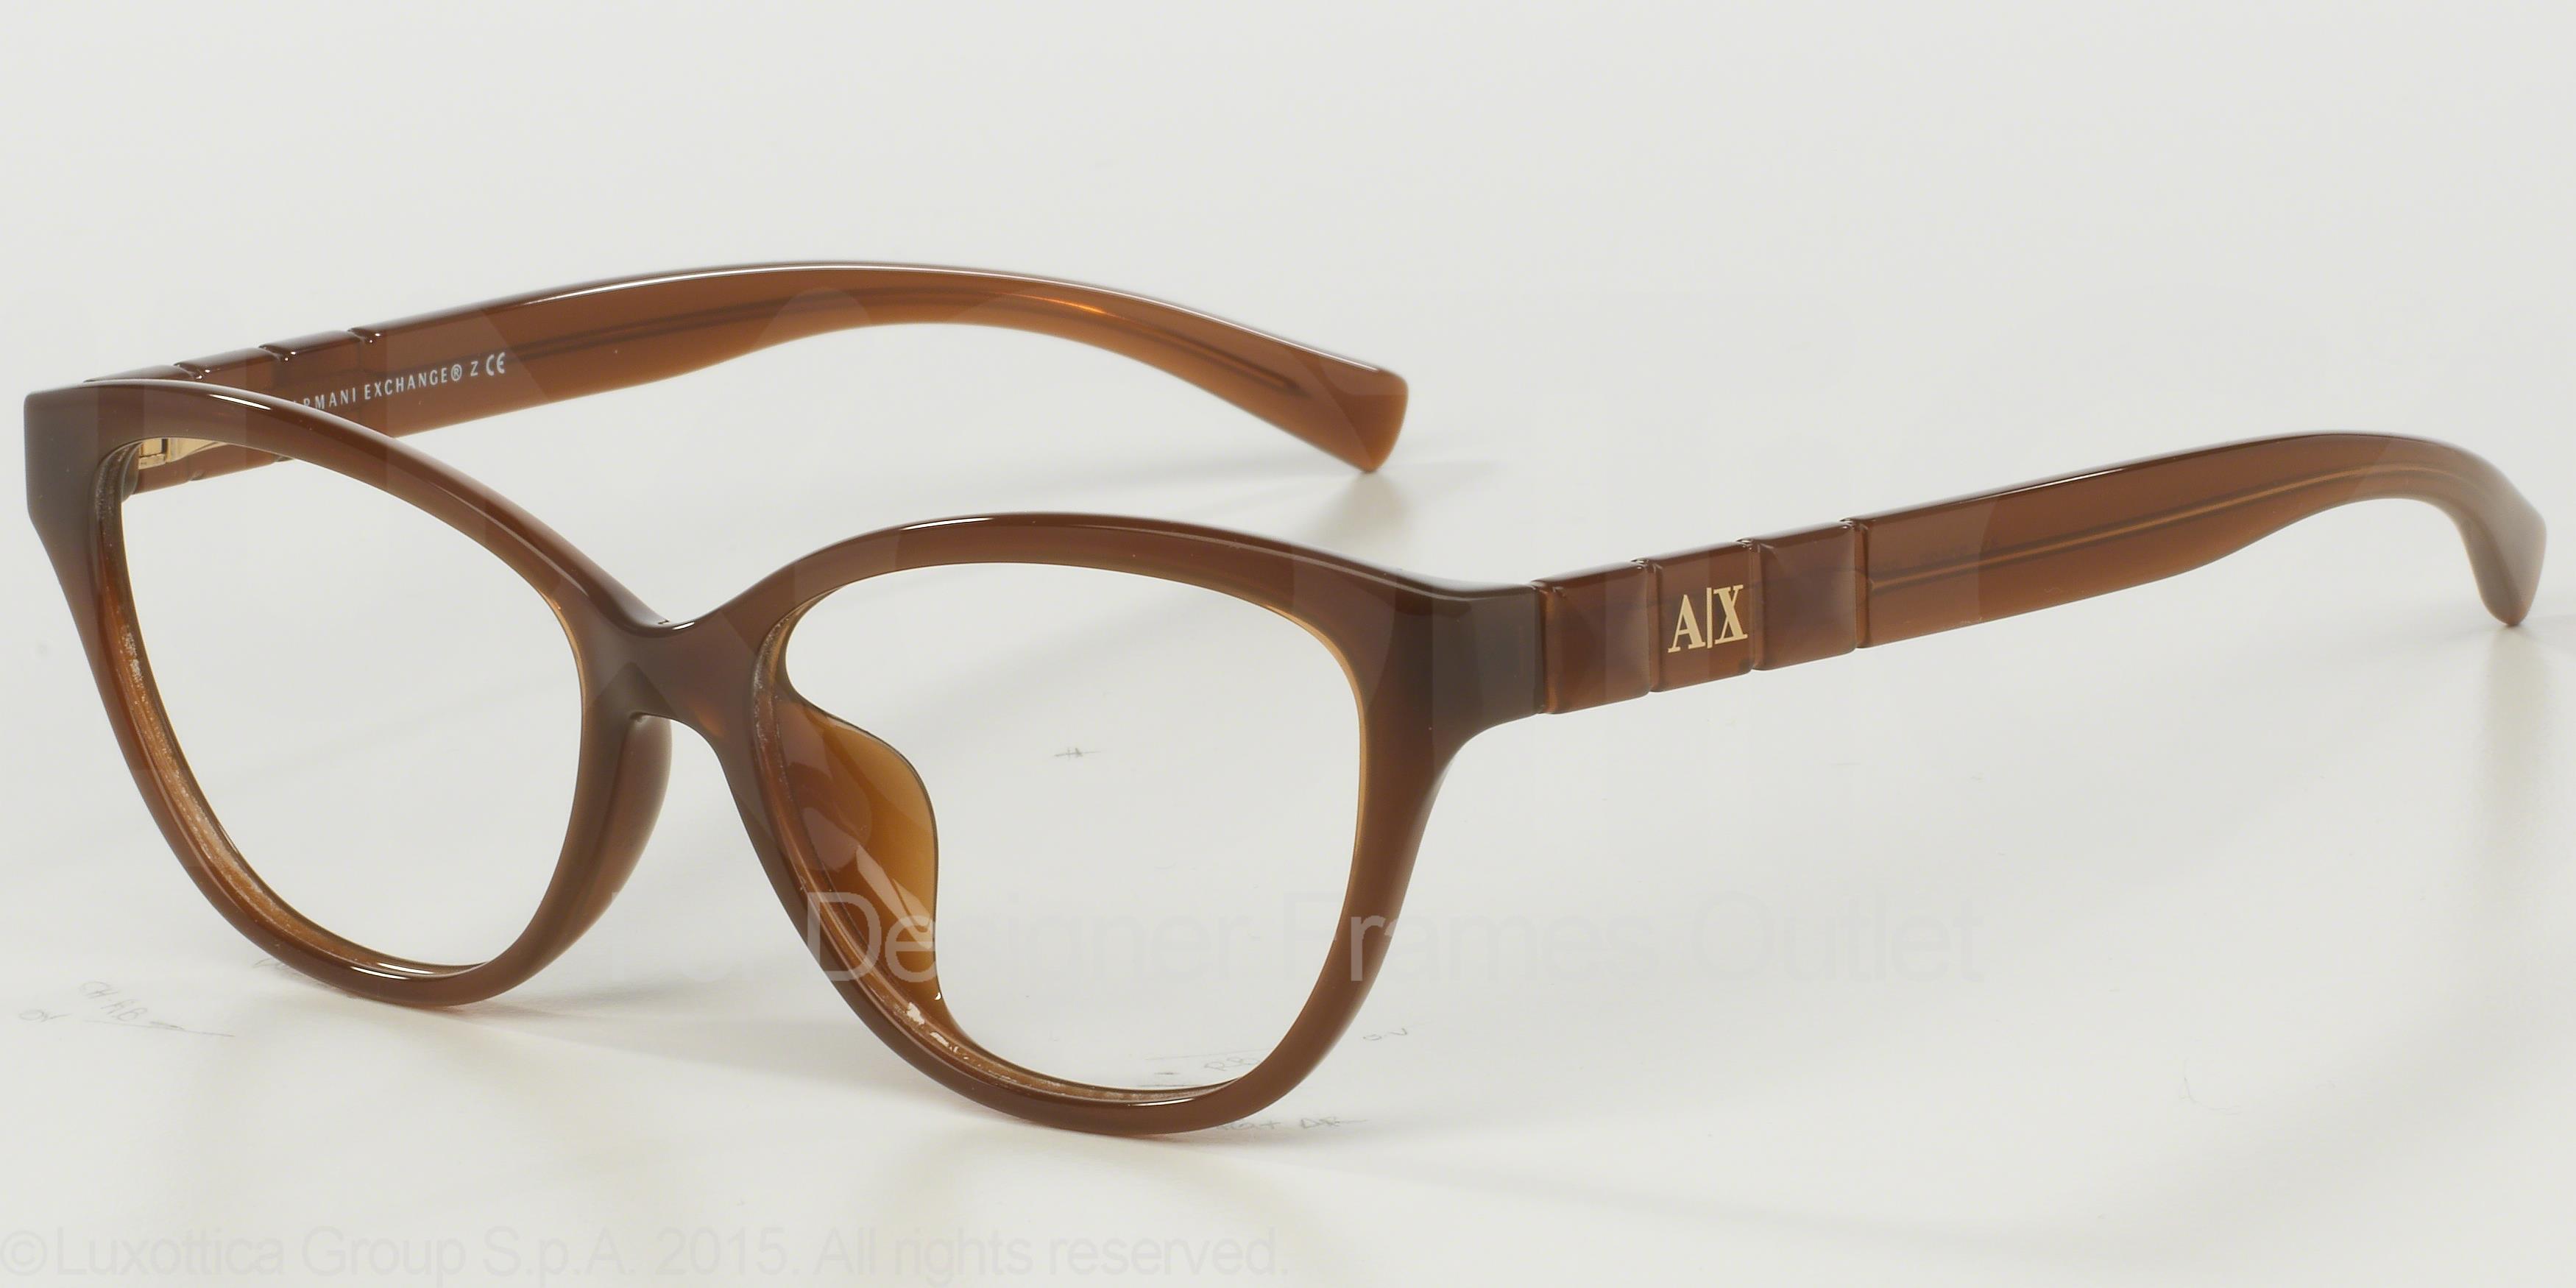 Designer Frames Outlet. Armani Exchange Eyeglasses AX3013